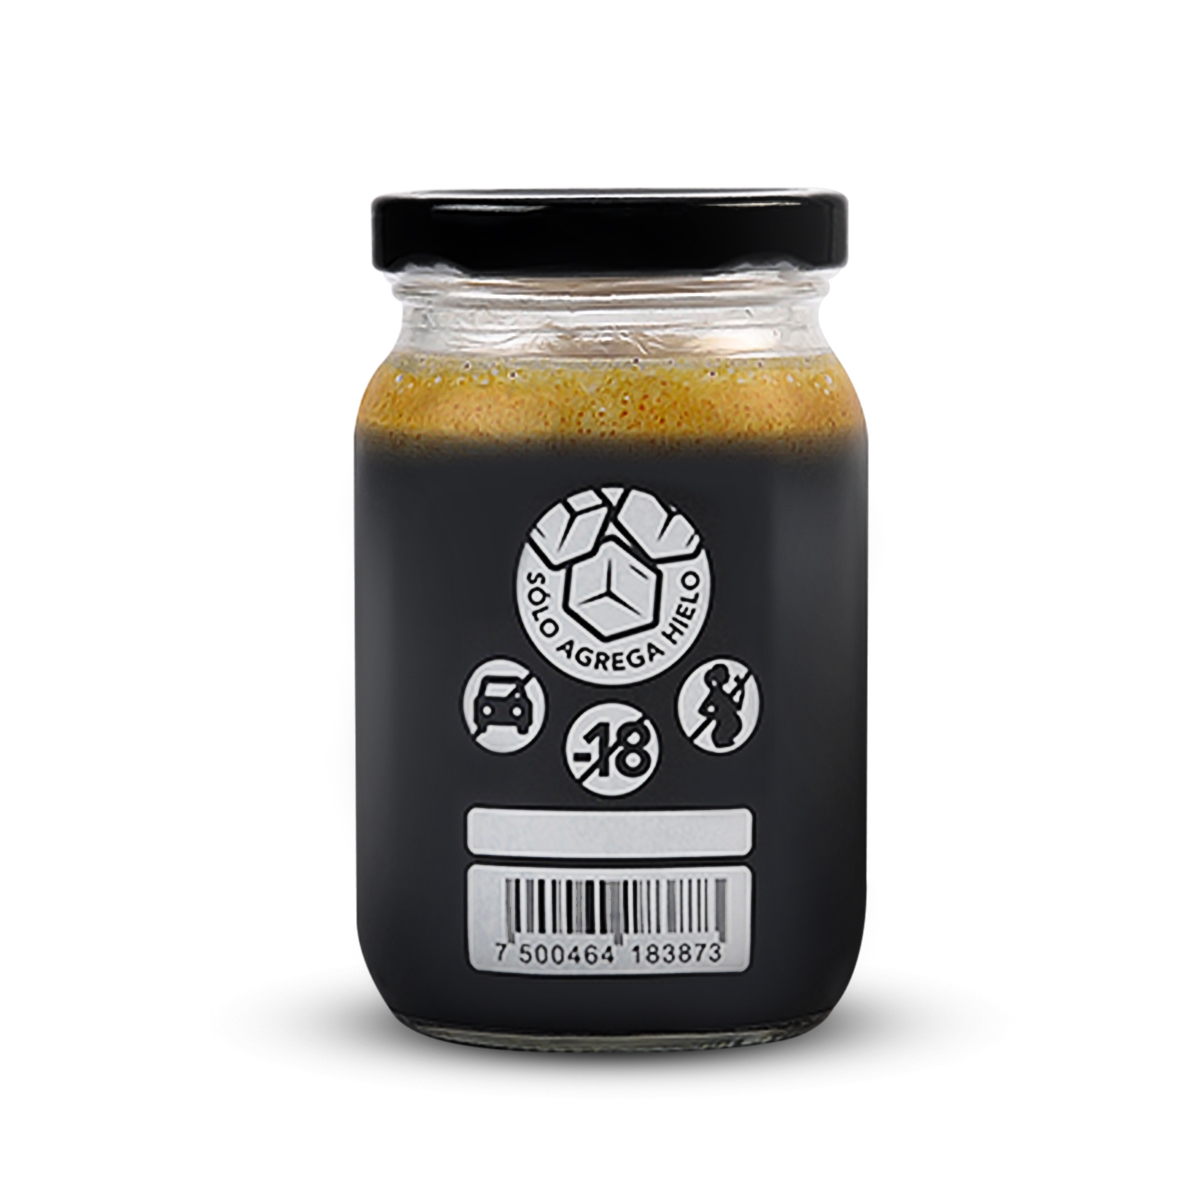 Roca Carajillo Digestivo Café Expreso Licor Herbal 6 Pack